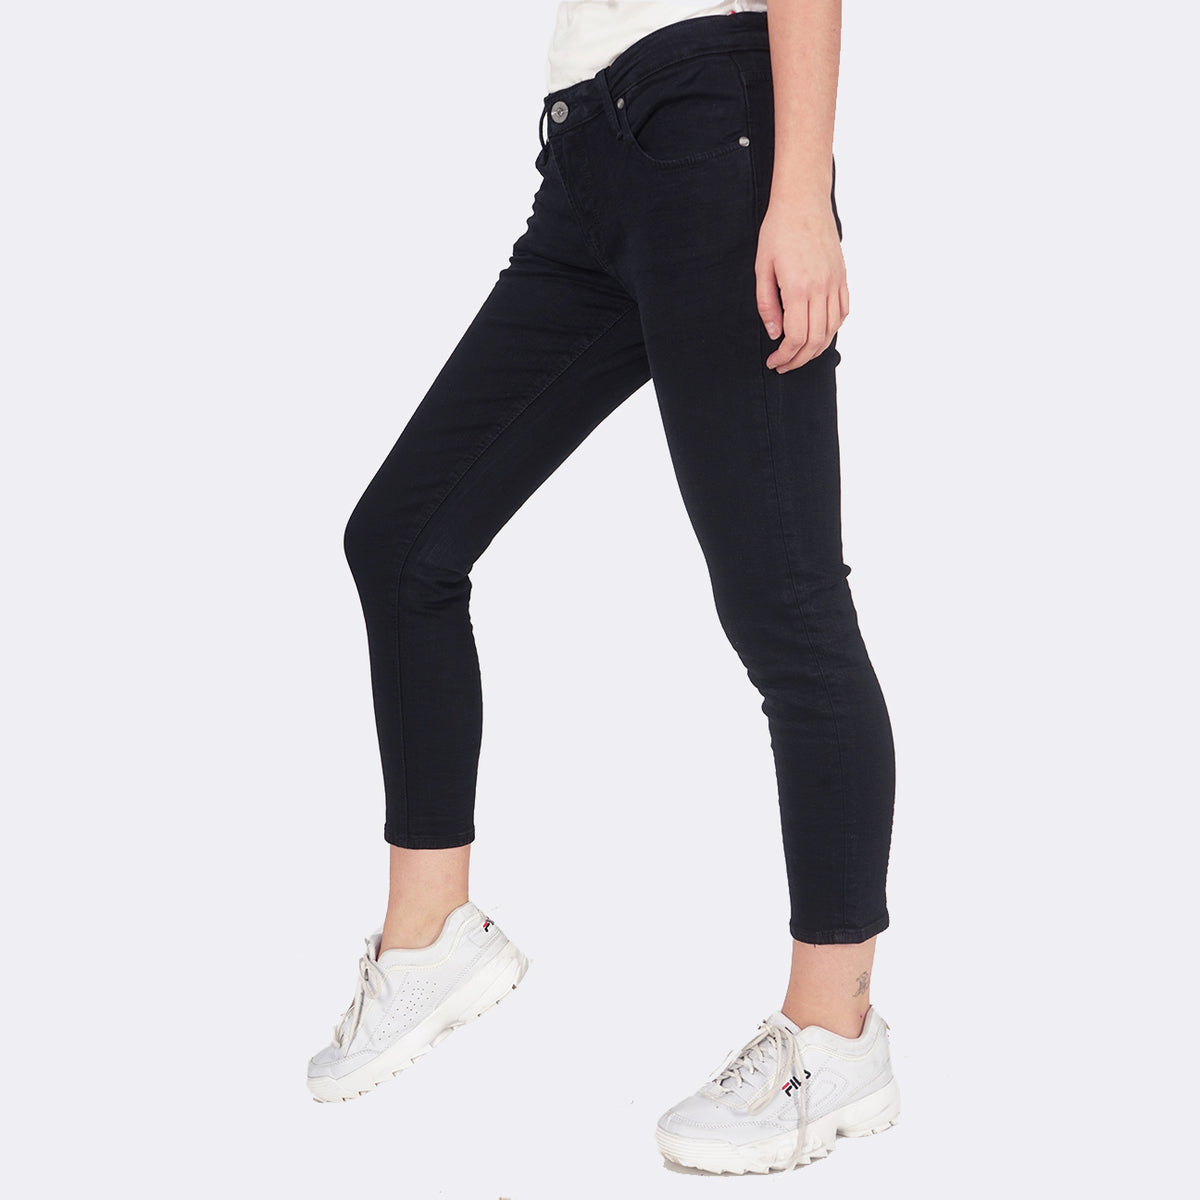 Jeans Skinny 10 Series Black Mid Waist